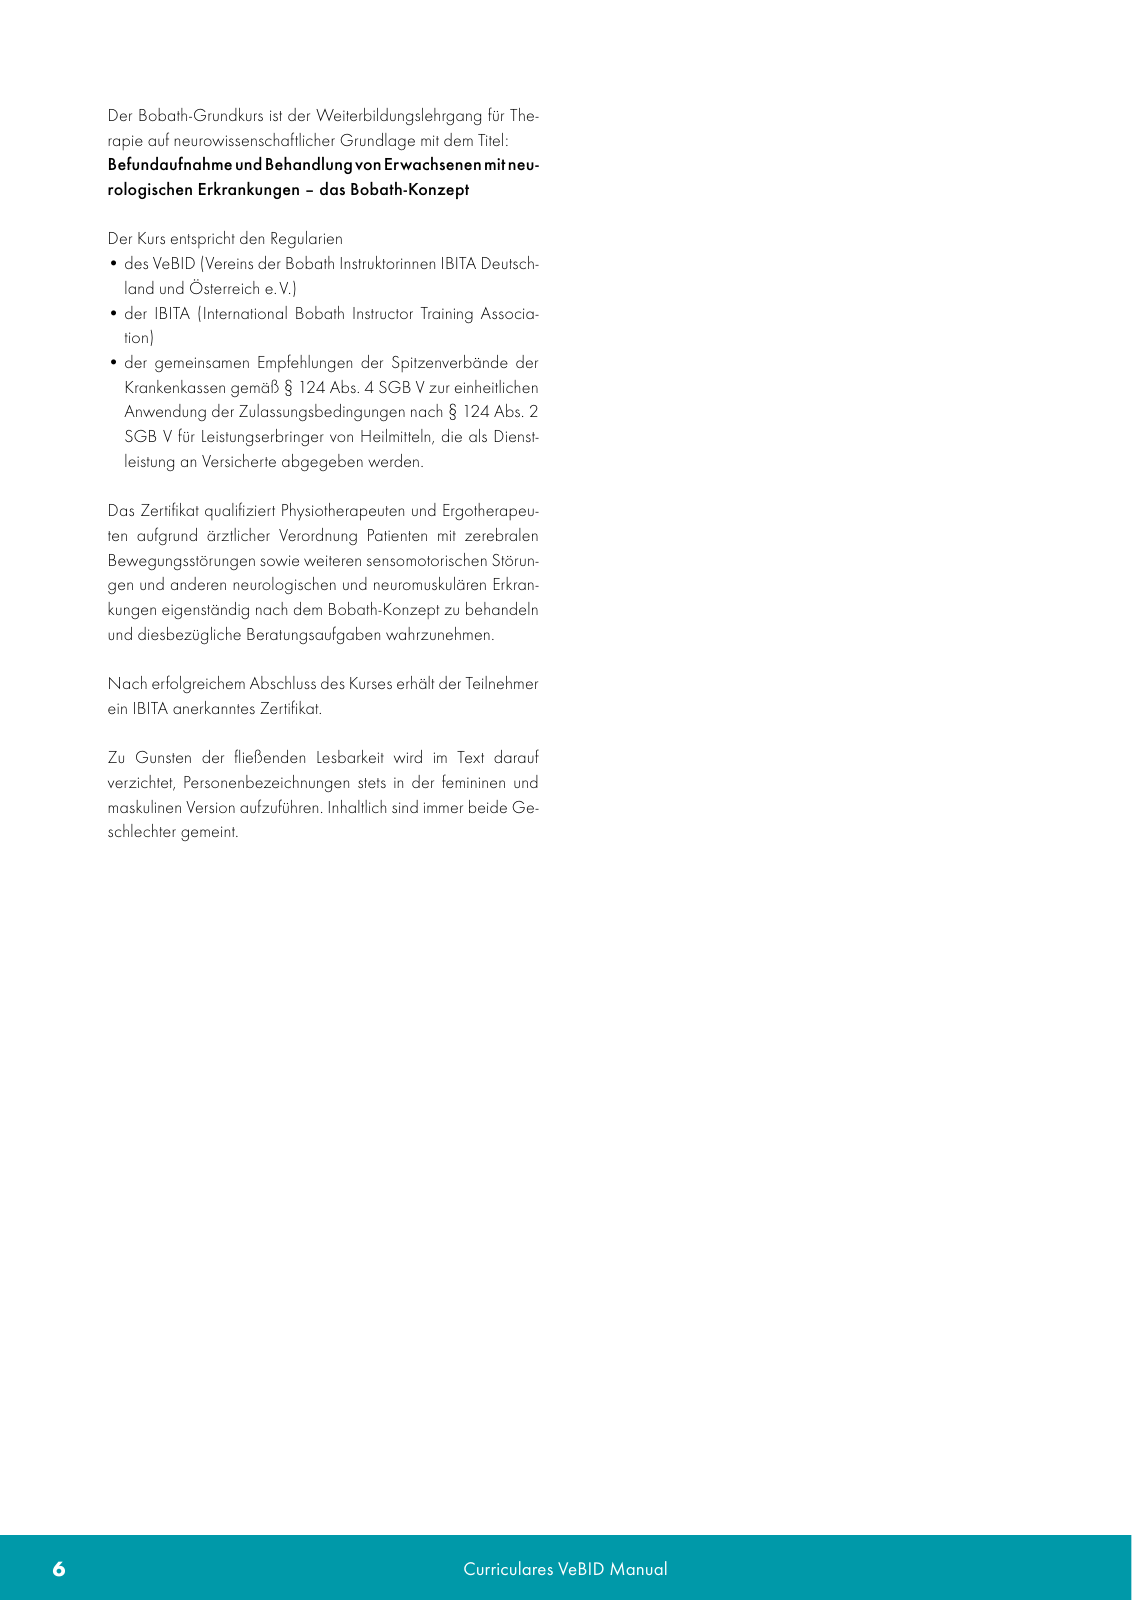 Vorschau VeBID Curriculum 2022 Seite 6